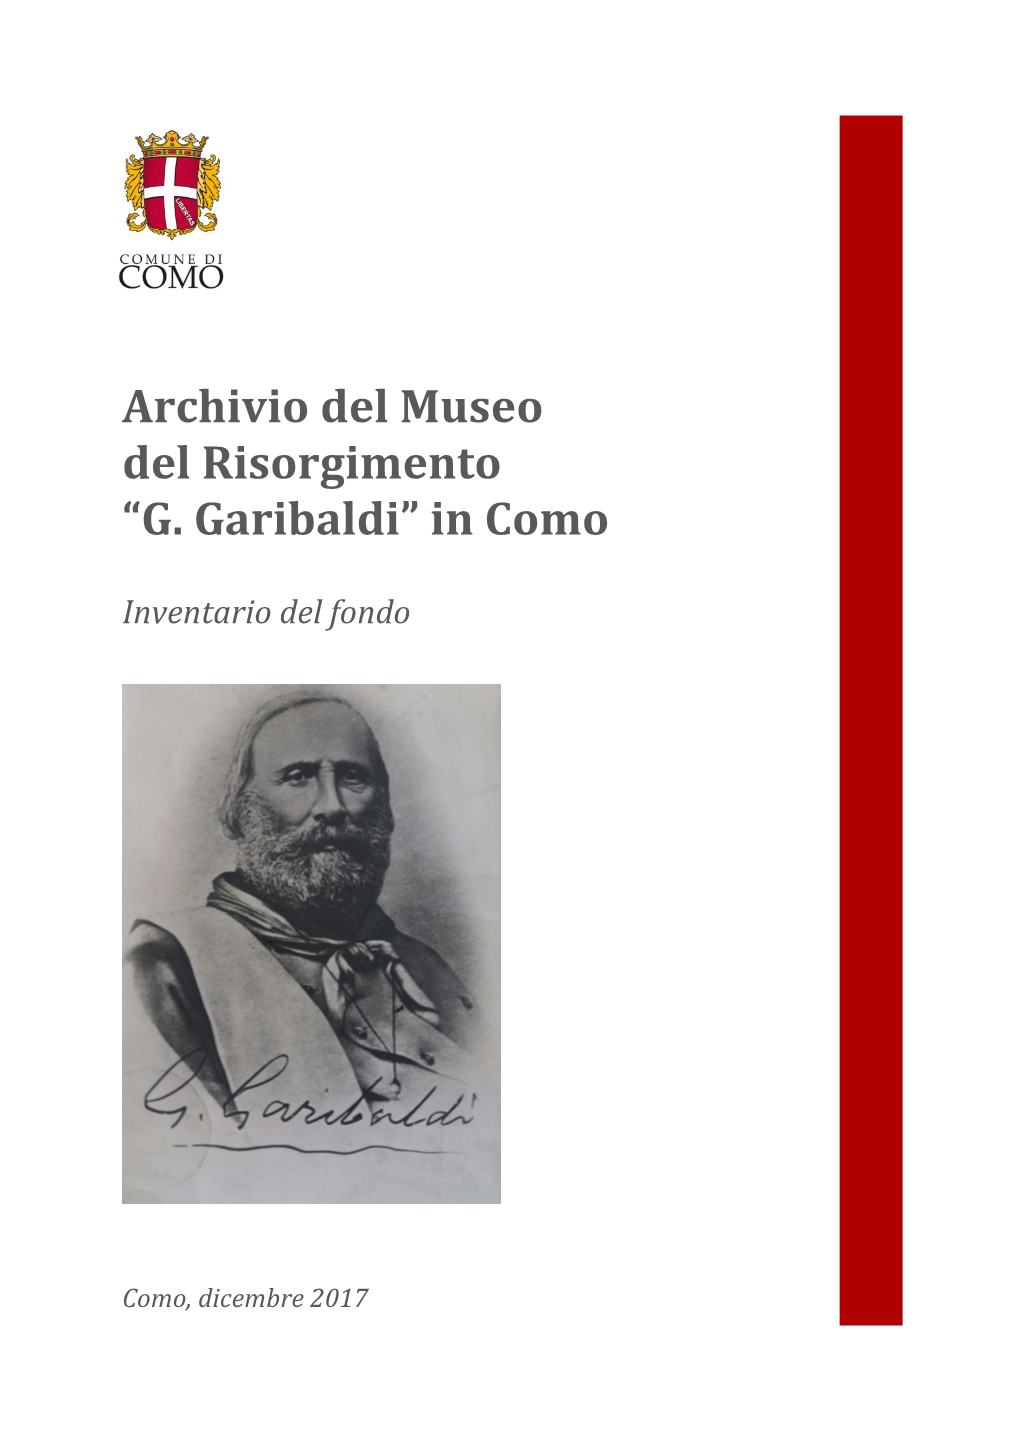 Archivio Del Museo Del Risorgimento “G. Garibaldi” in Como